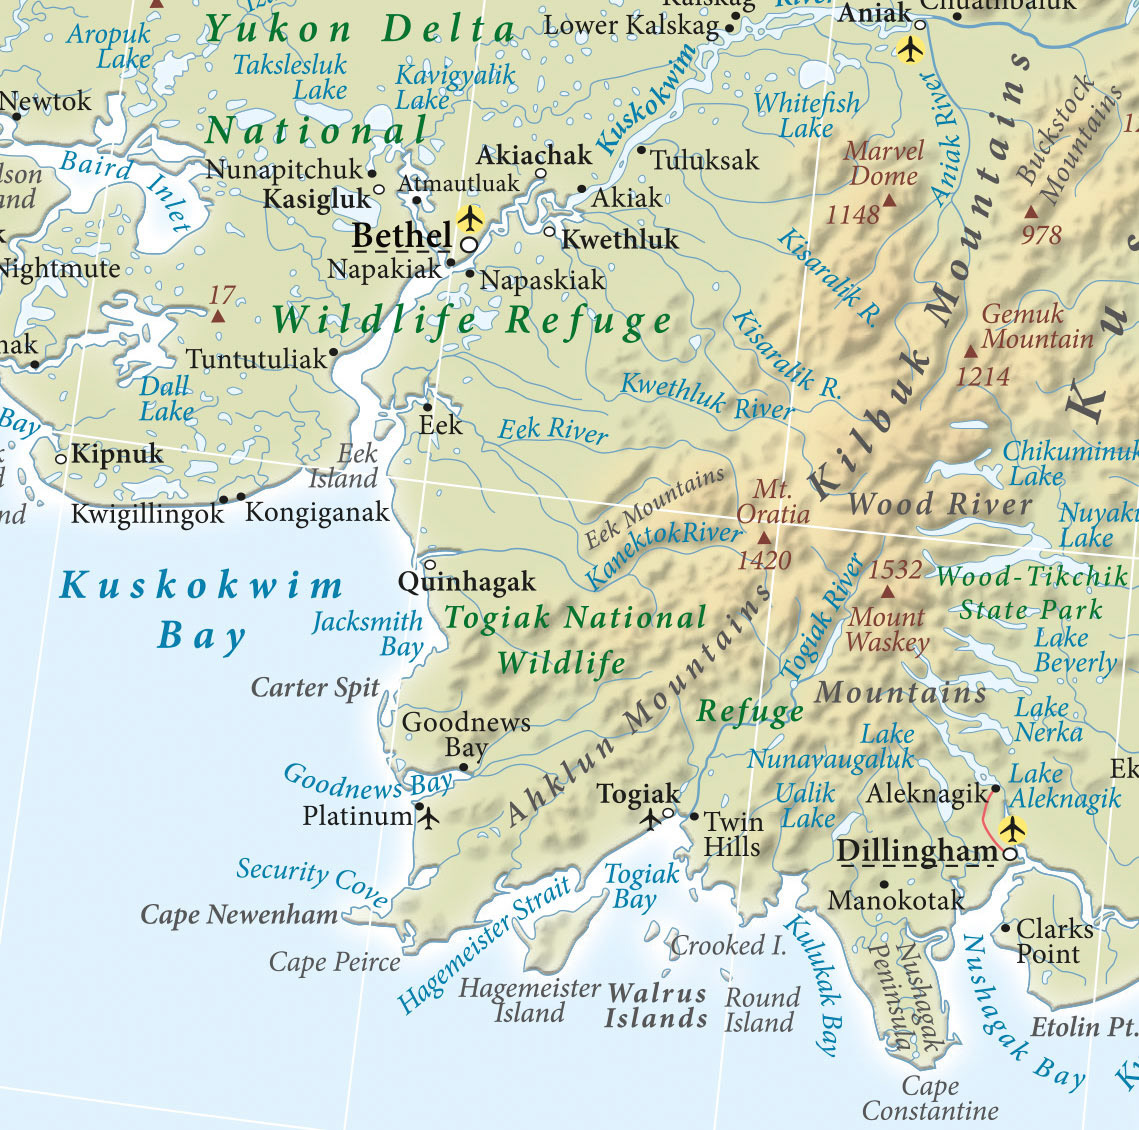 Северная америка полуостров аляска. Аляска штат США на карте. Где находится полуостров Аляска на карте Северной Америки. Расположение полуострова Аляска на карте. Границы штата Аляска на карте.